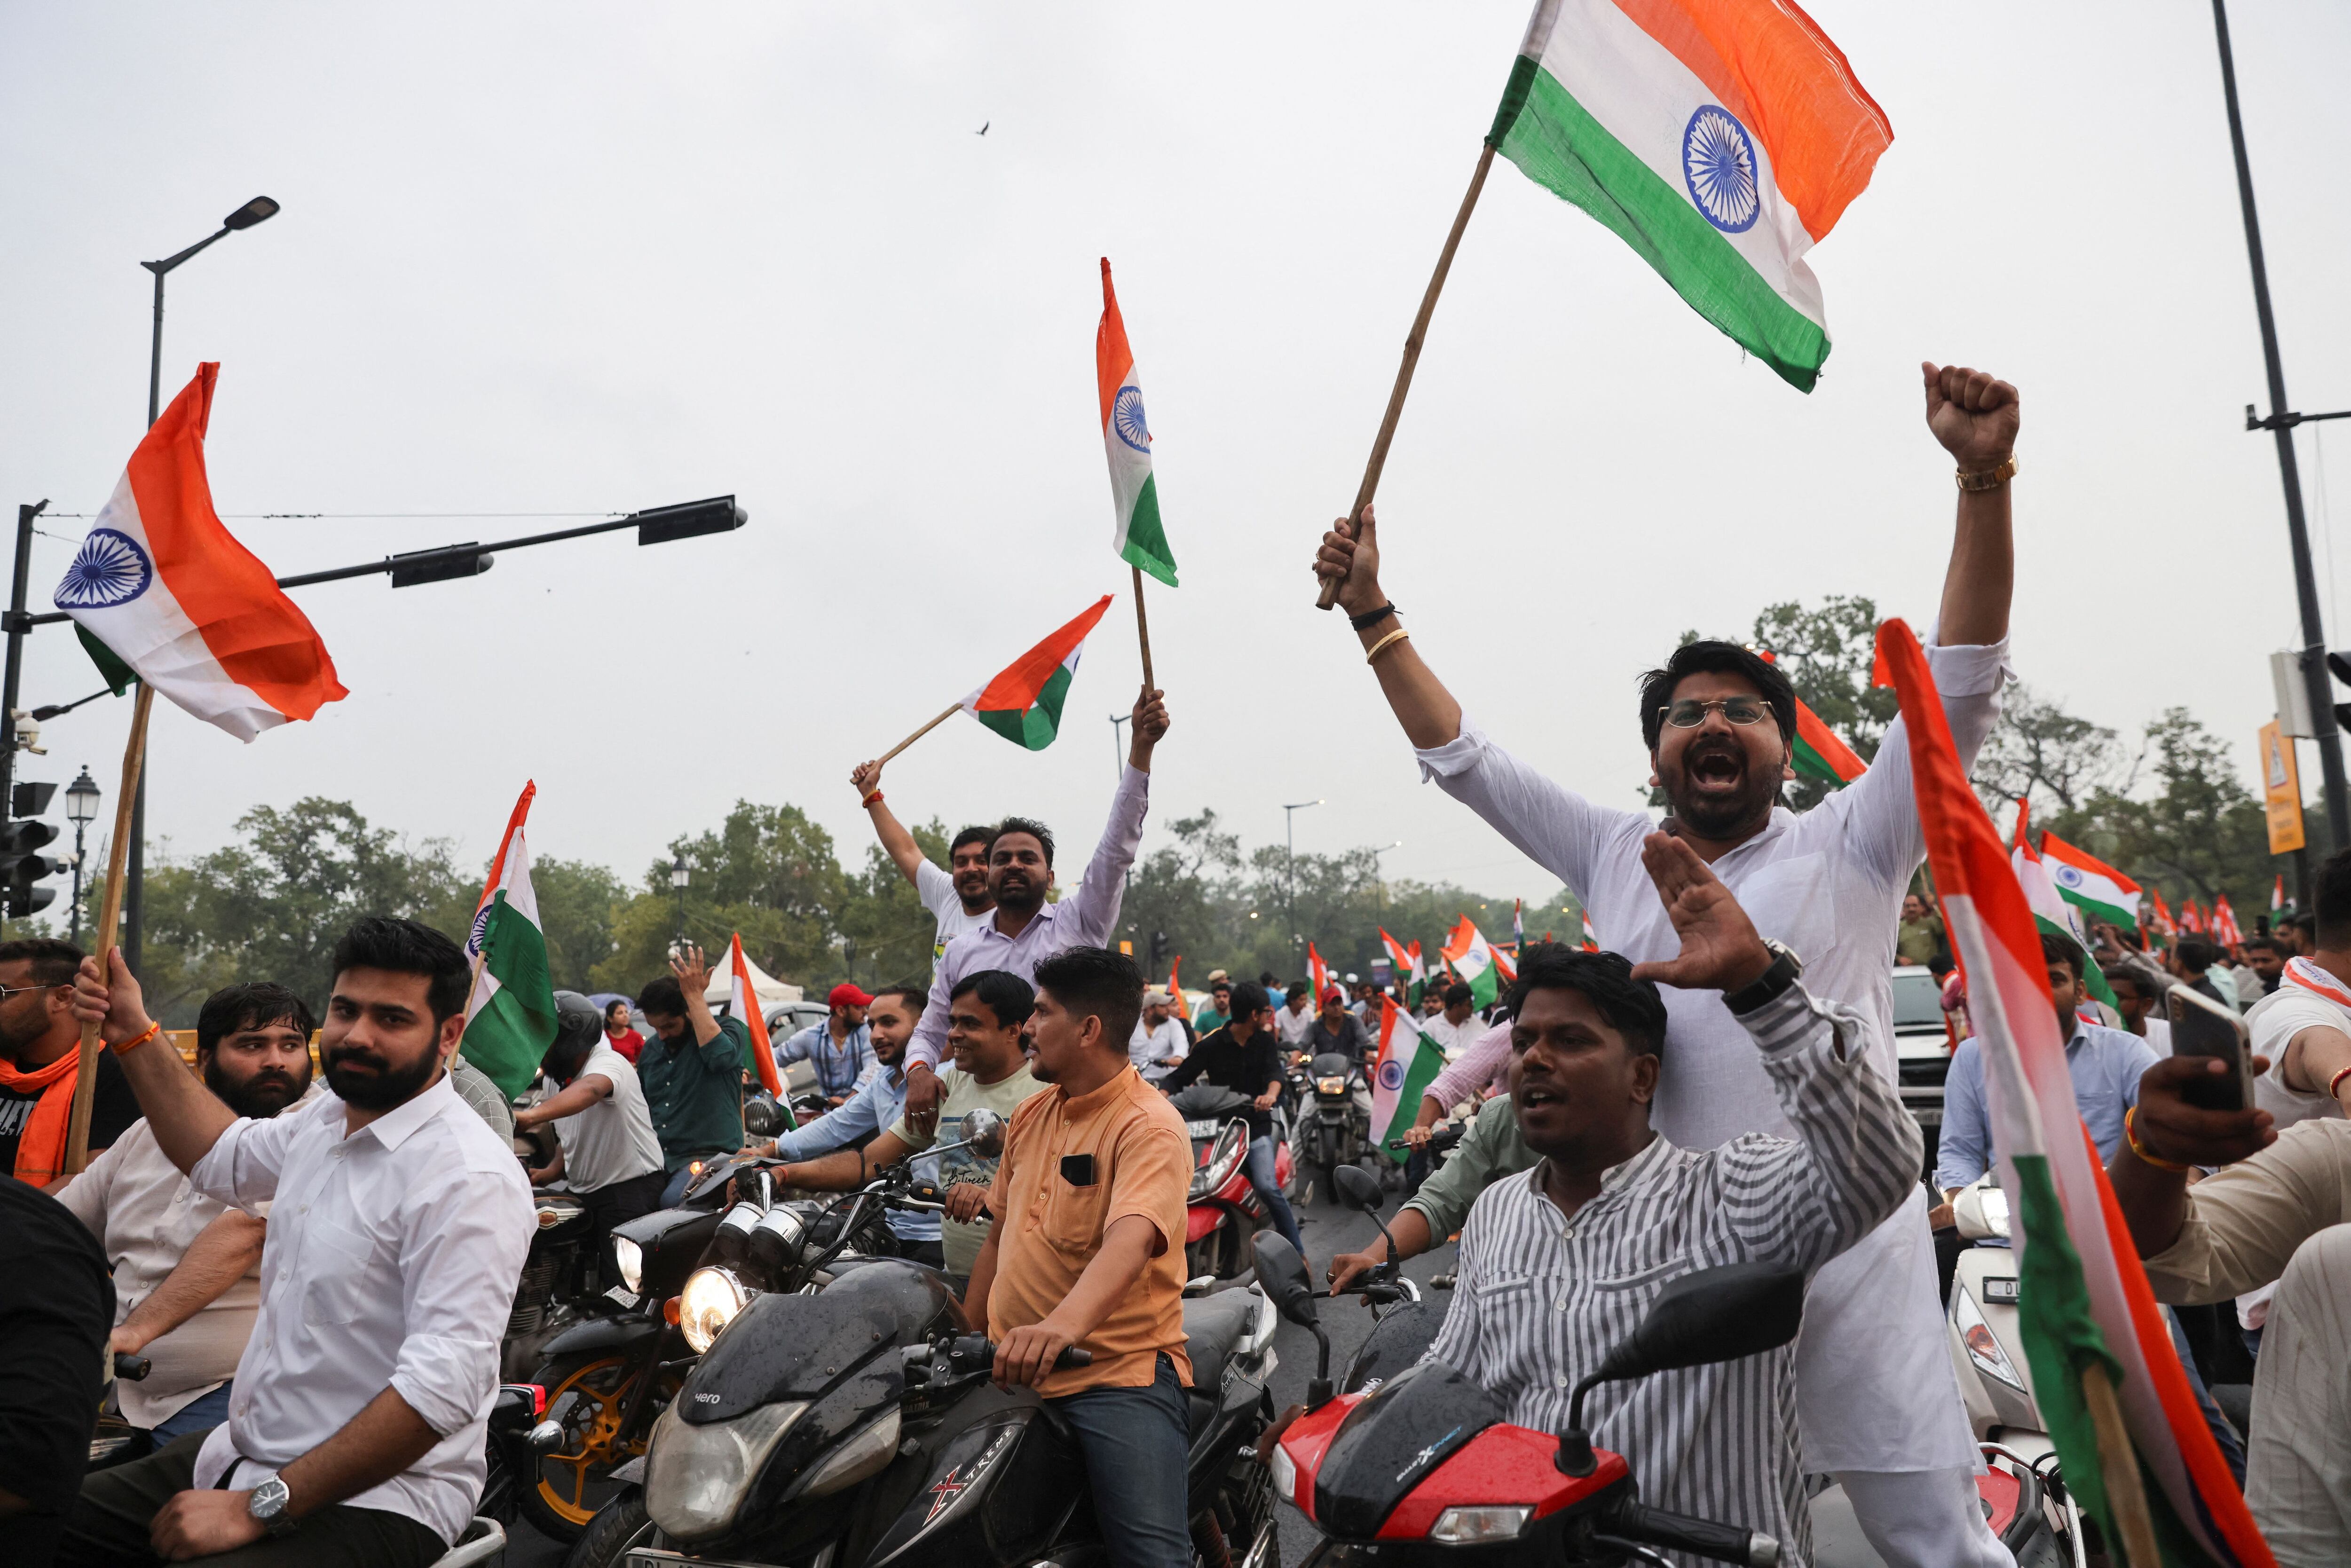 Simpatizantes del partido gobernante en la India, el BJP, celebran el alunizaje de la nave espacial, este miércoles cerca de la Puerta de la India, en Nueva Delhi.